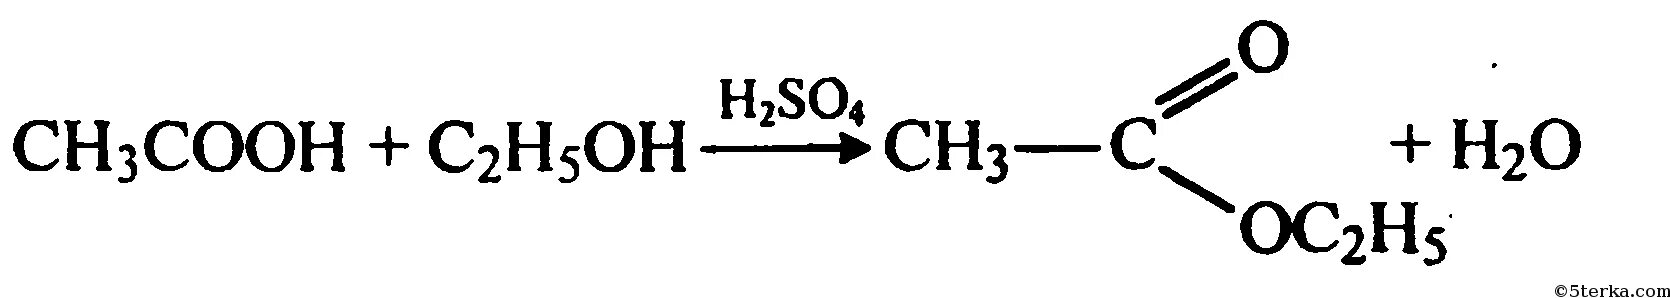 Cu2 2oh cu. Окисление метанола на Медном катализаторе. Уксусный альдегид и гидроксид меди 2. Уксусный альдегид плюс гидроксид меди 2.